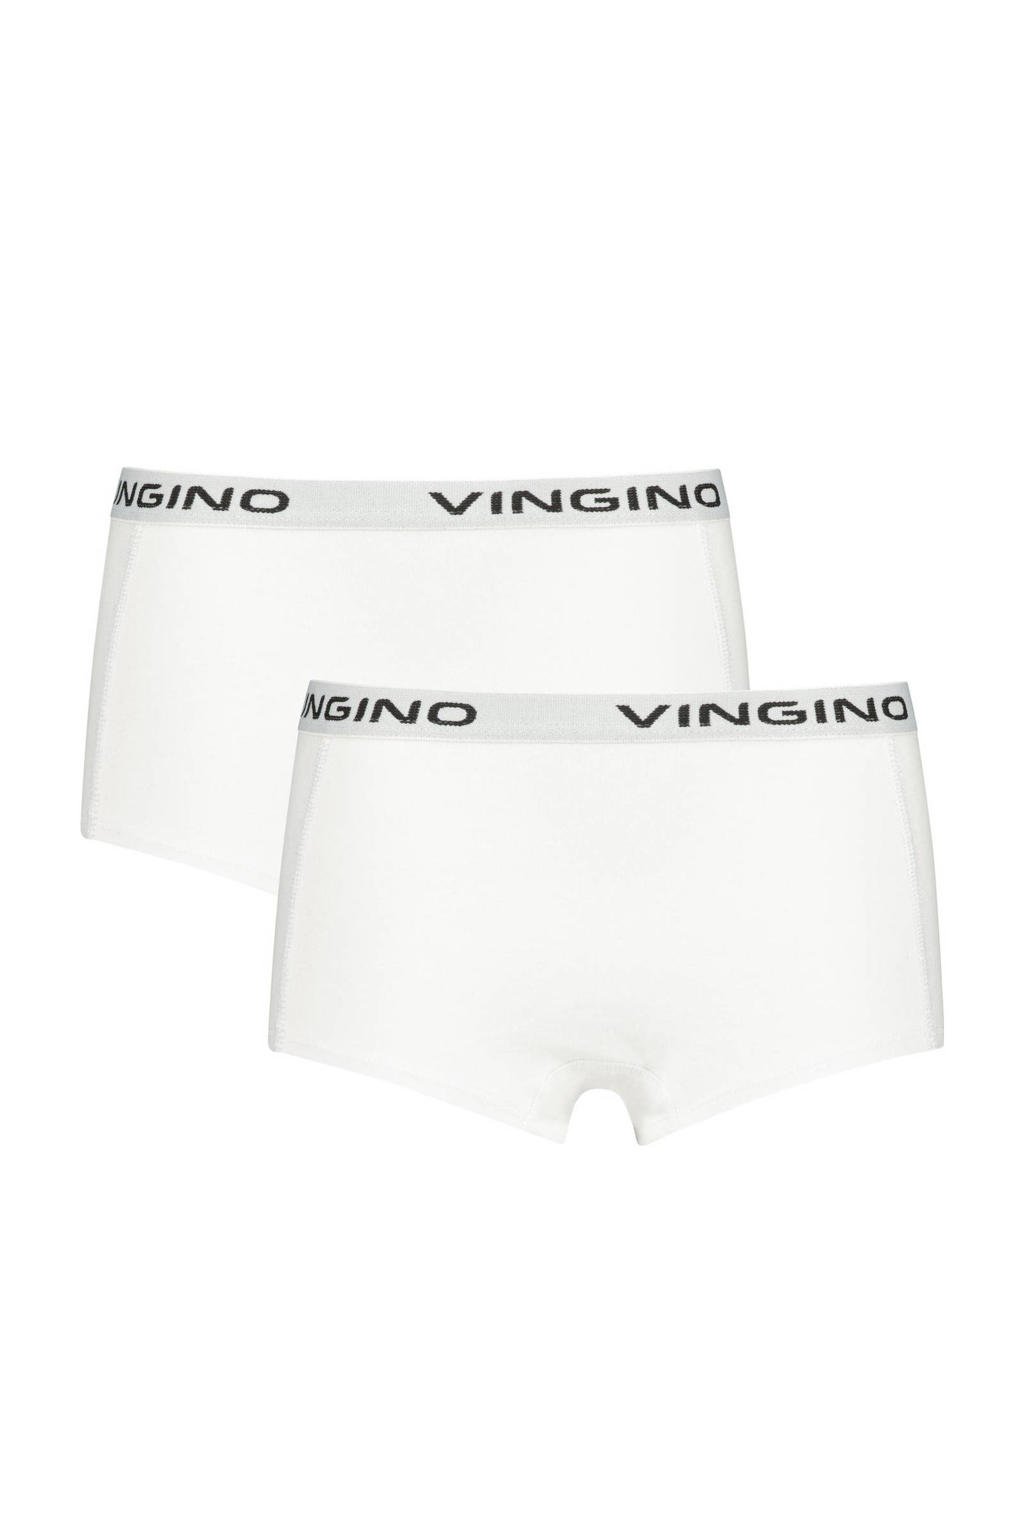 Vingino shorts - set van 2 wit